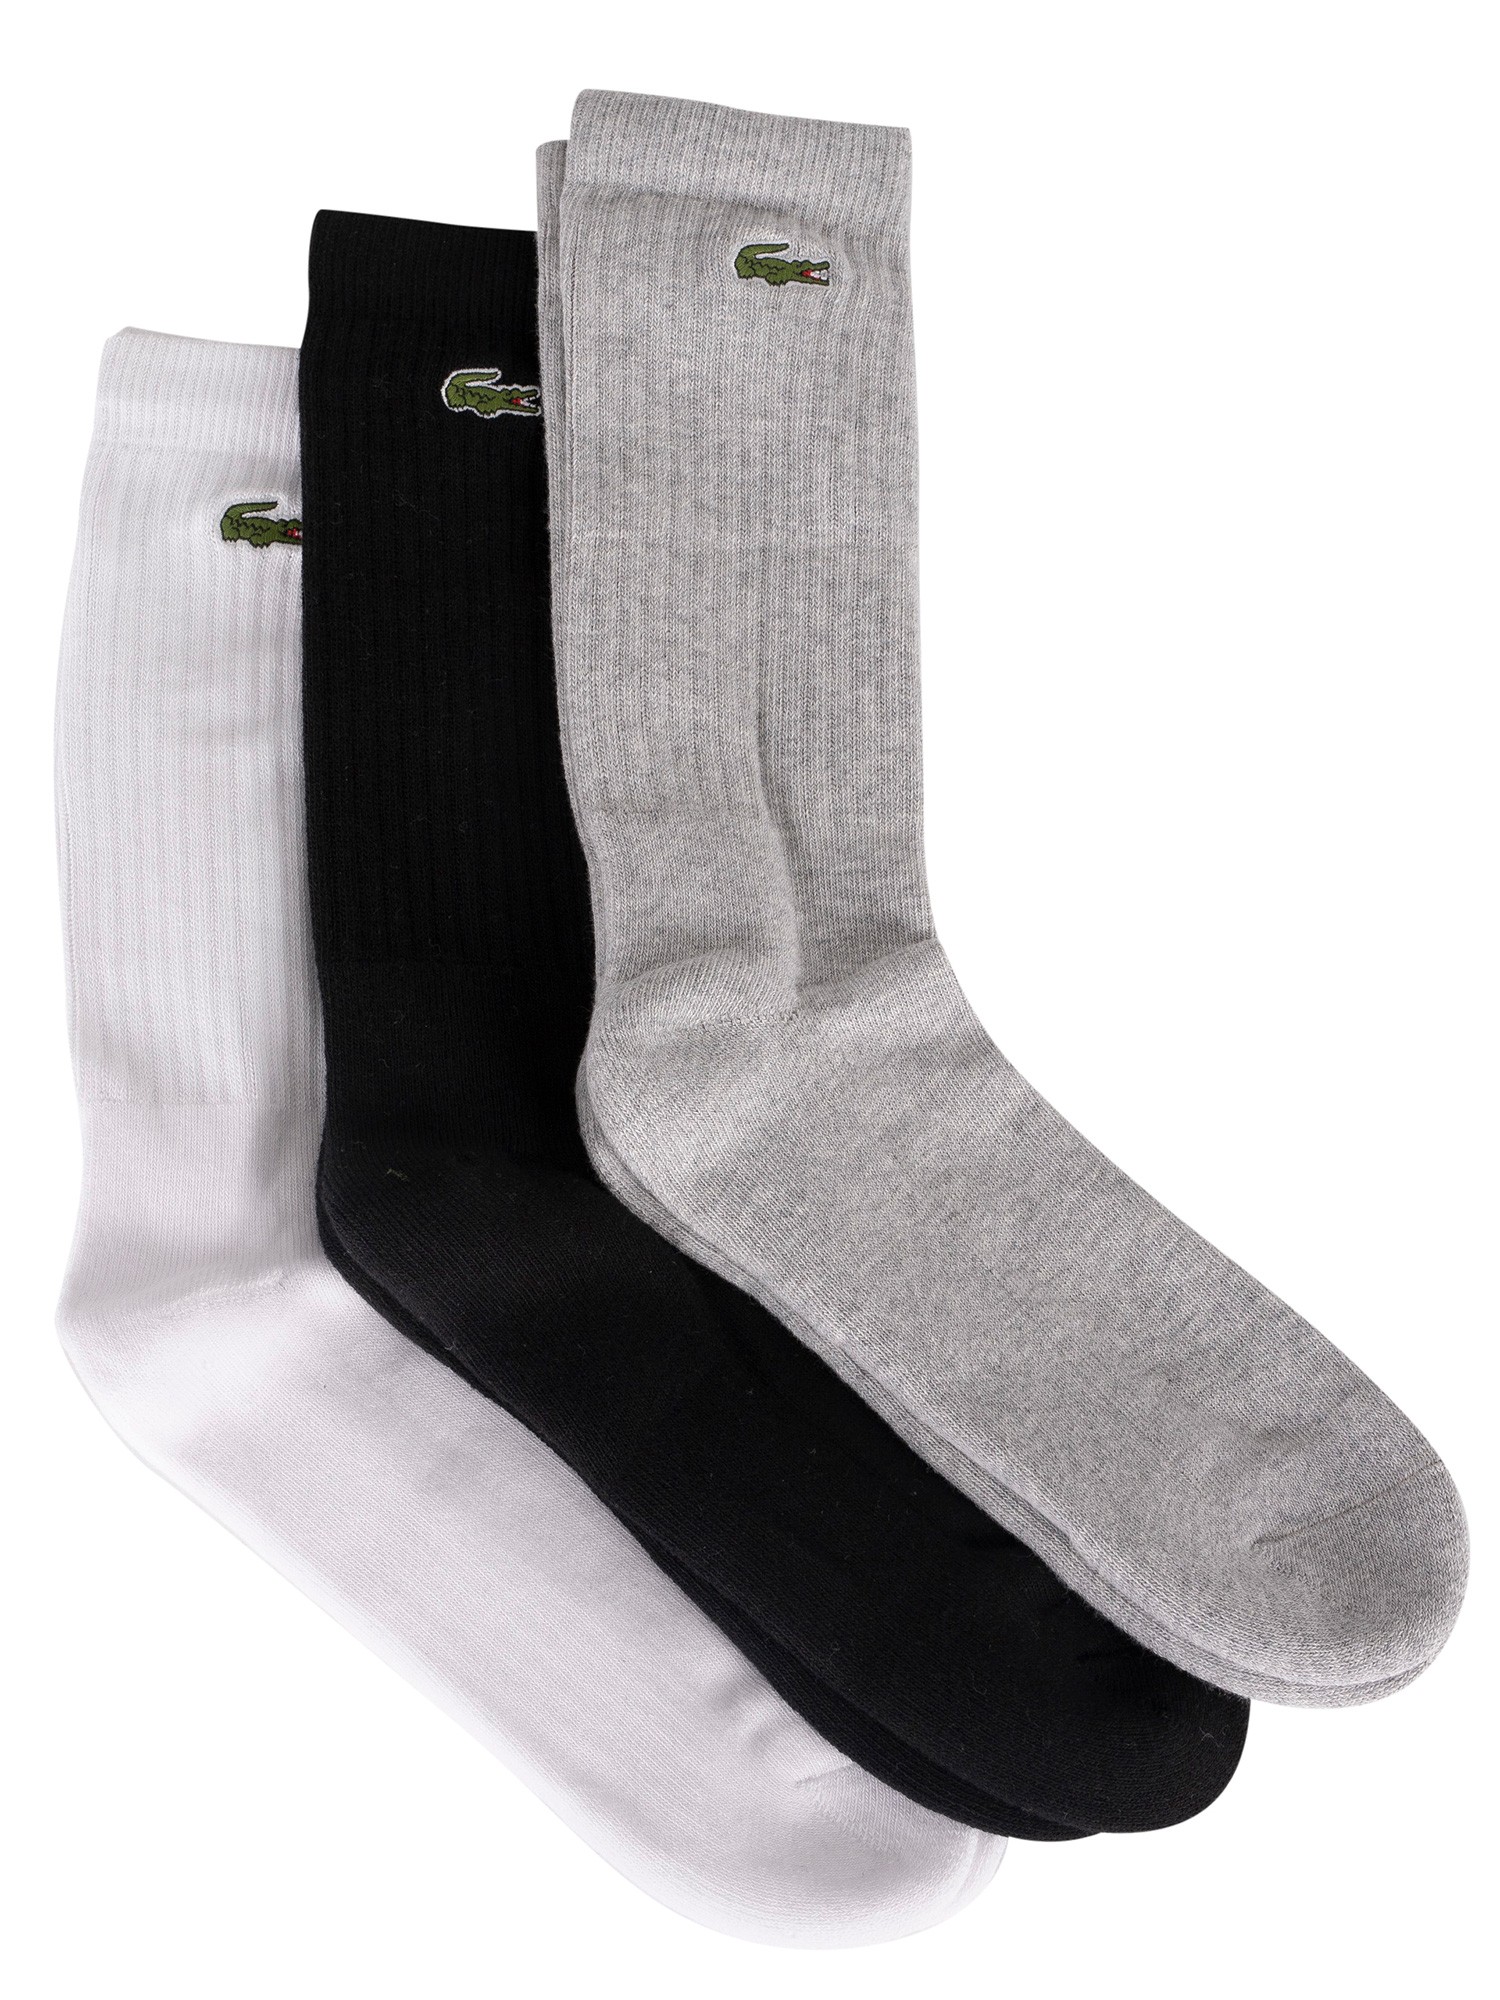 lacoste socks 3 pack